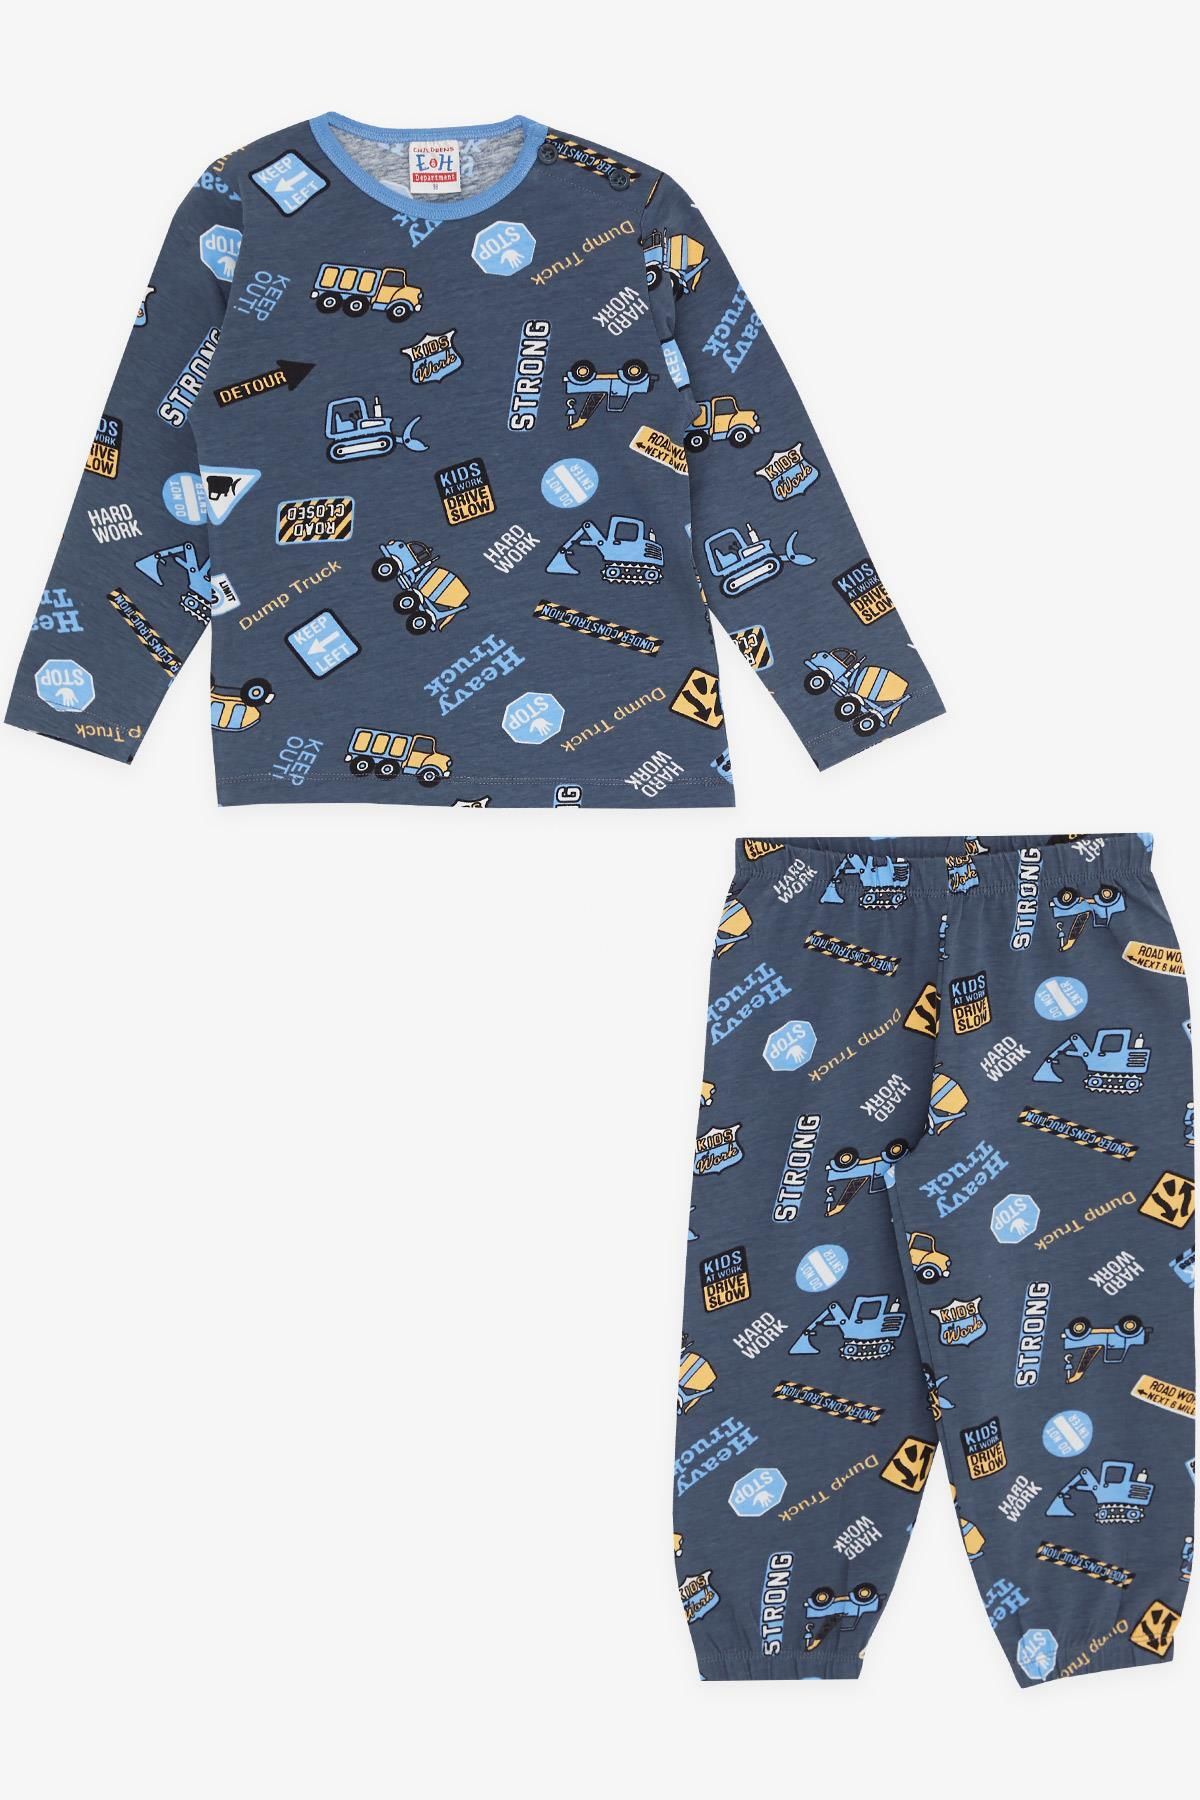 Breeze Girls & Boys Erkek Bebek Pijama Takımı Iş Makinası Temalı 9 Ay-3 Yaş, Füme